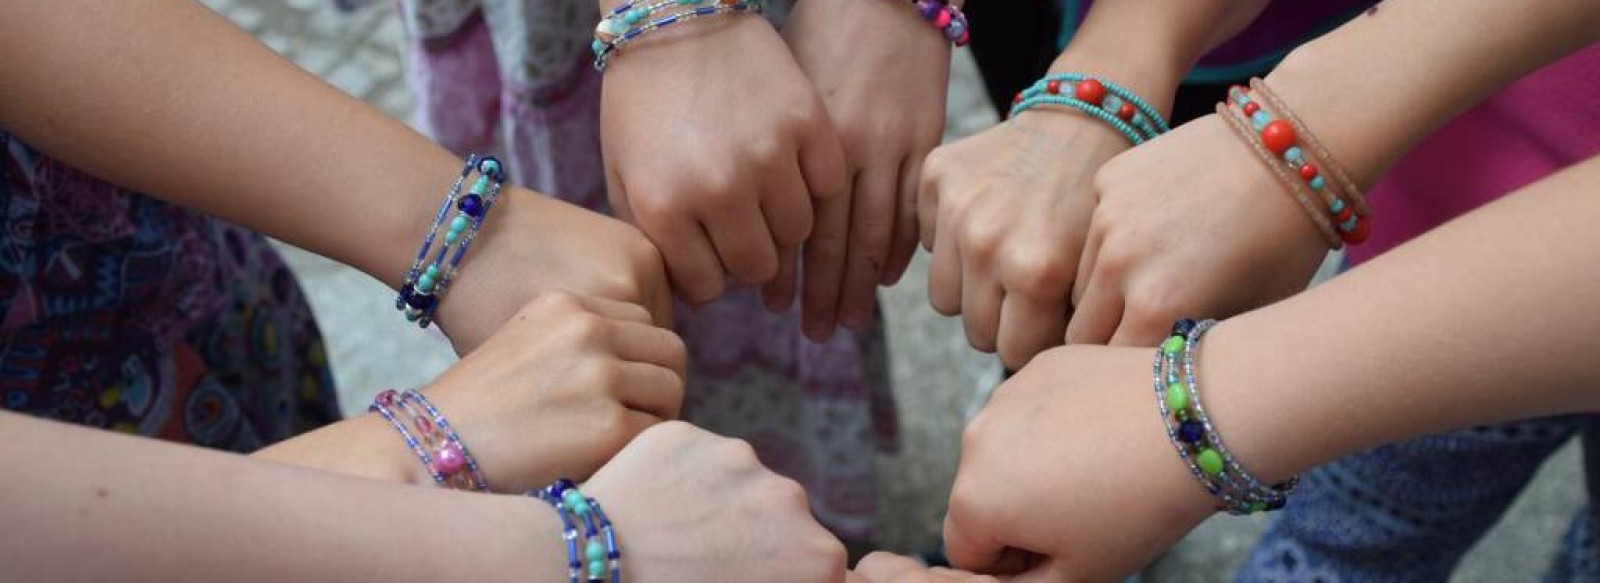 Atelier creatif pour enfants : fabrication de bracelets fun et boite a bijoux